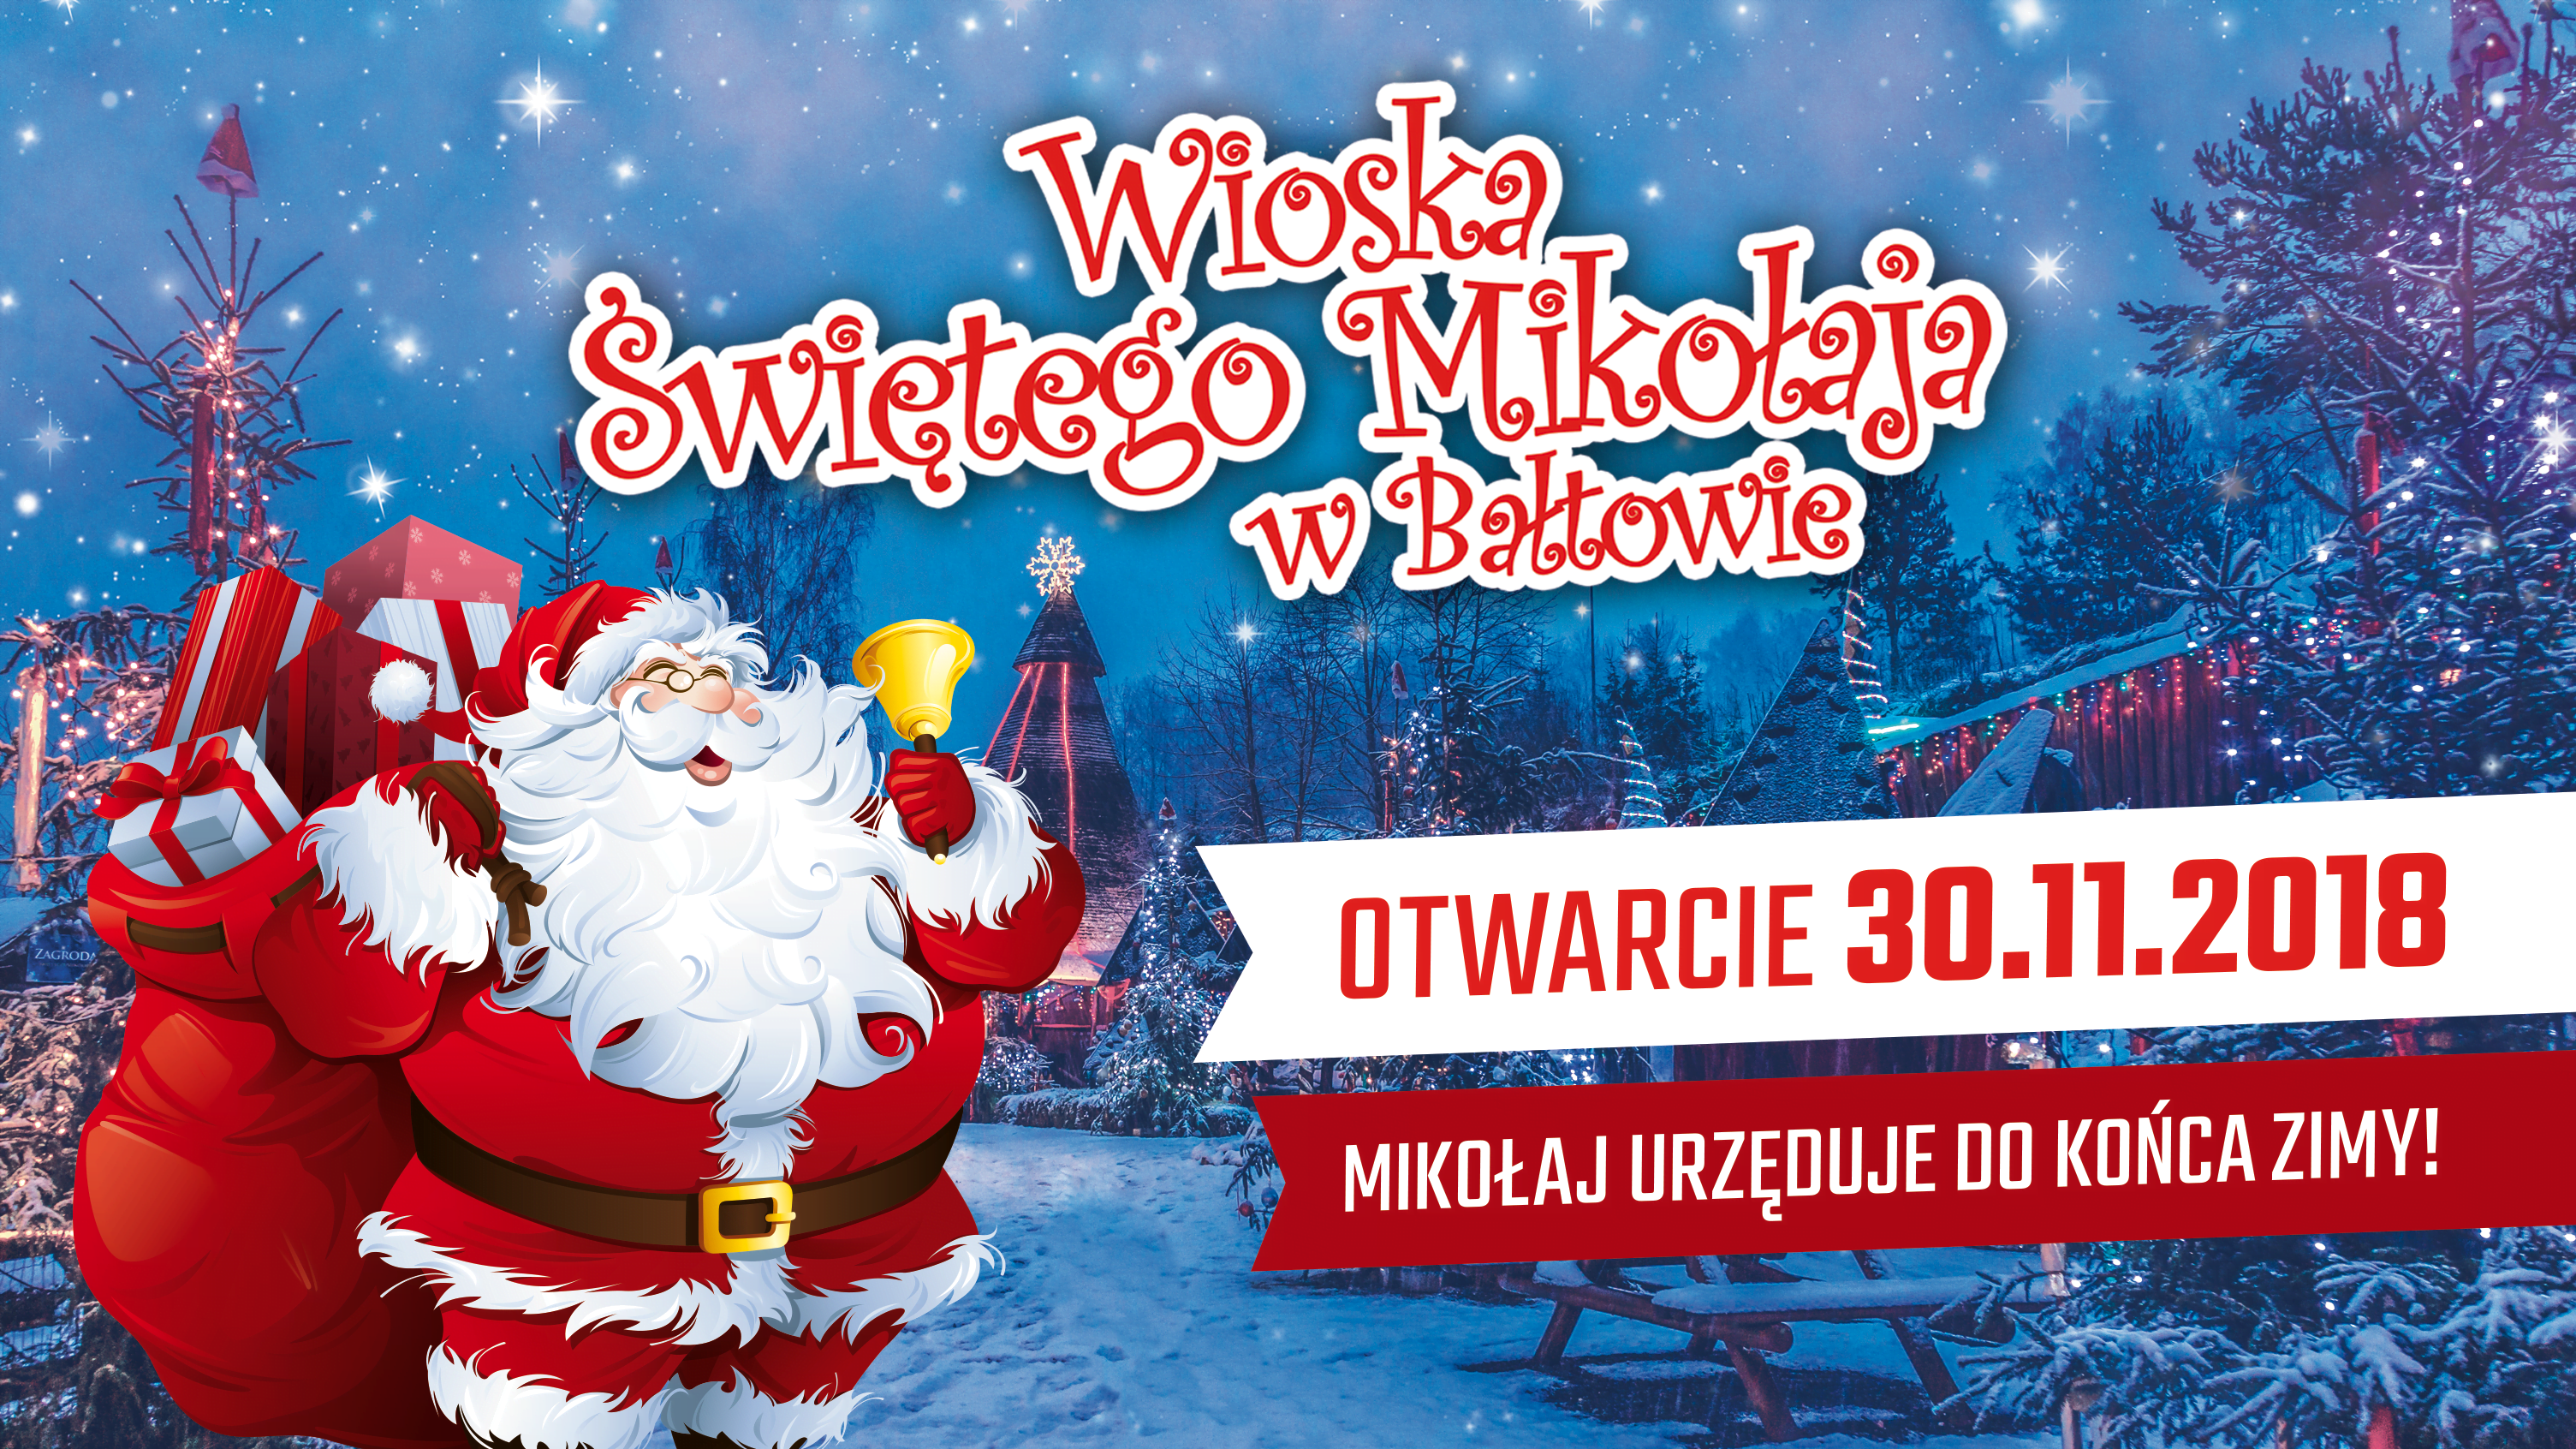 wioska-sw-Mikolaja-Baltow-